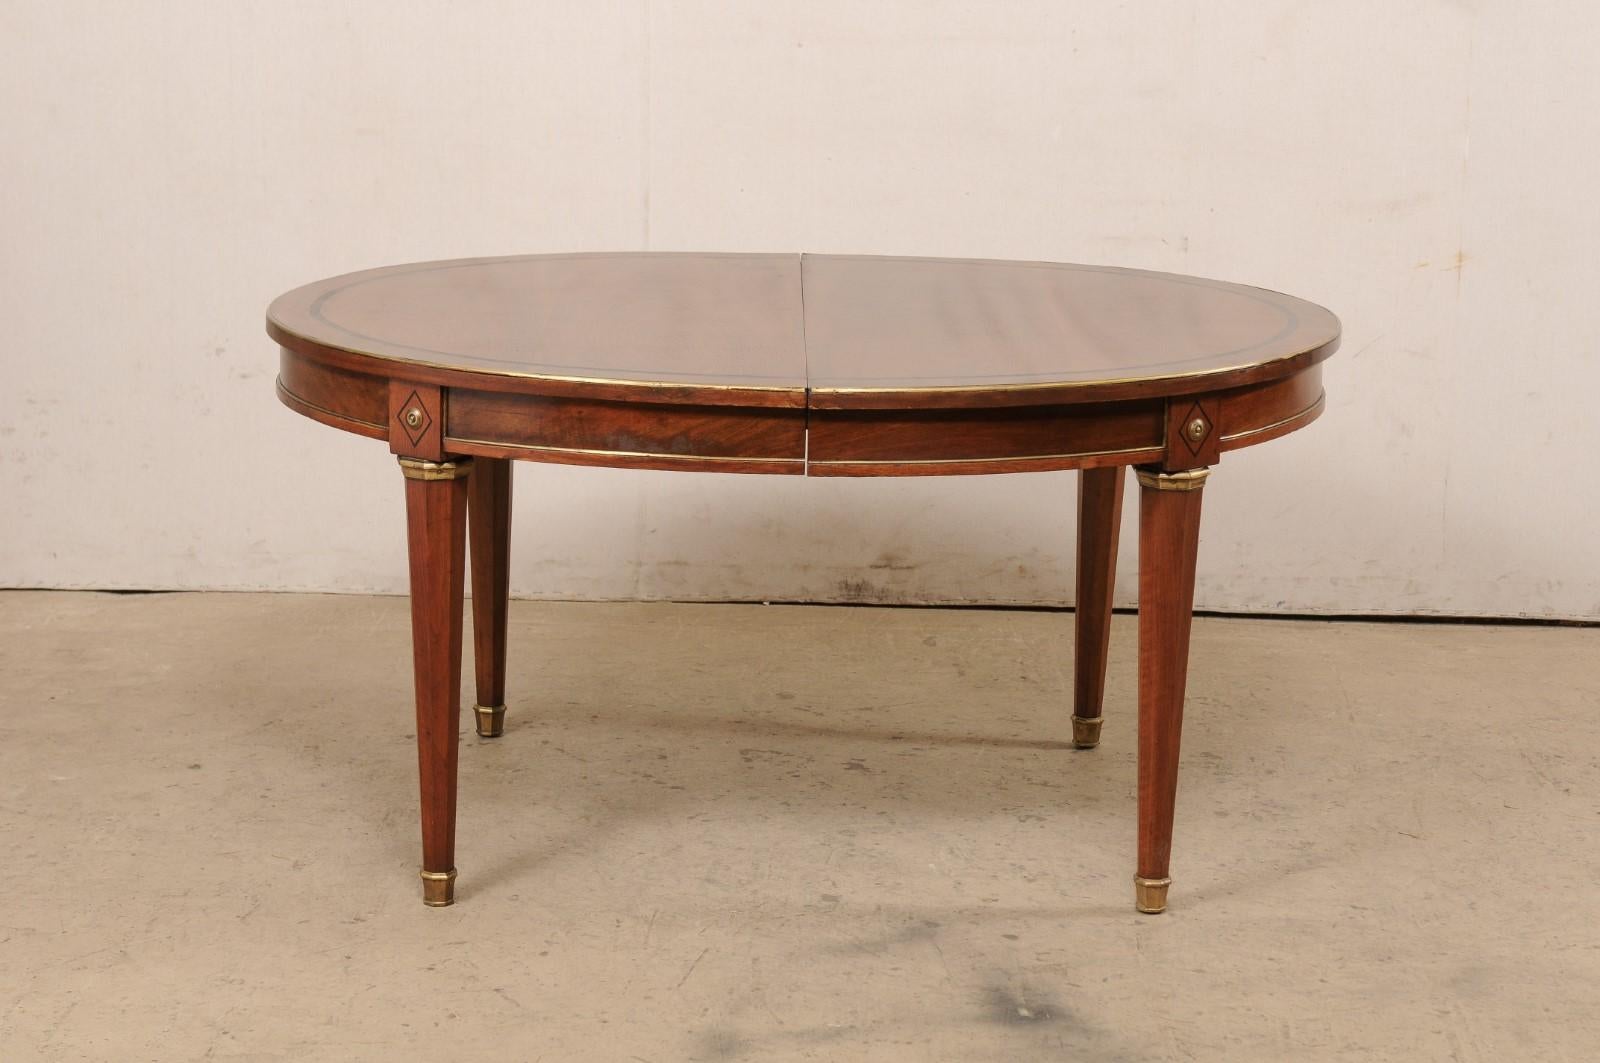 Bois Table ovale de style néoclassique français avec garniture et accents en laiton (1 rallonge en forme de feuille) en vente